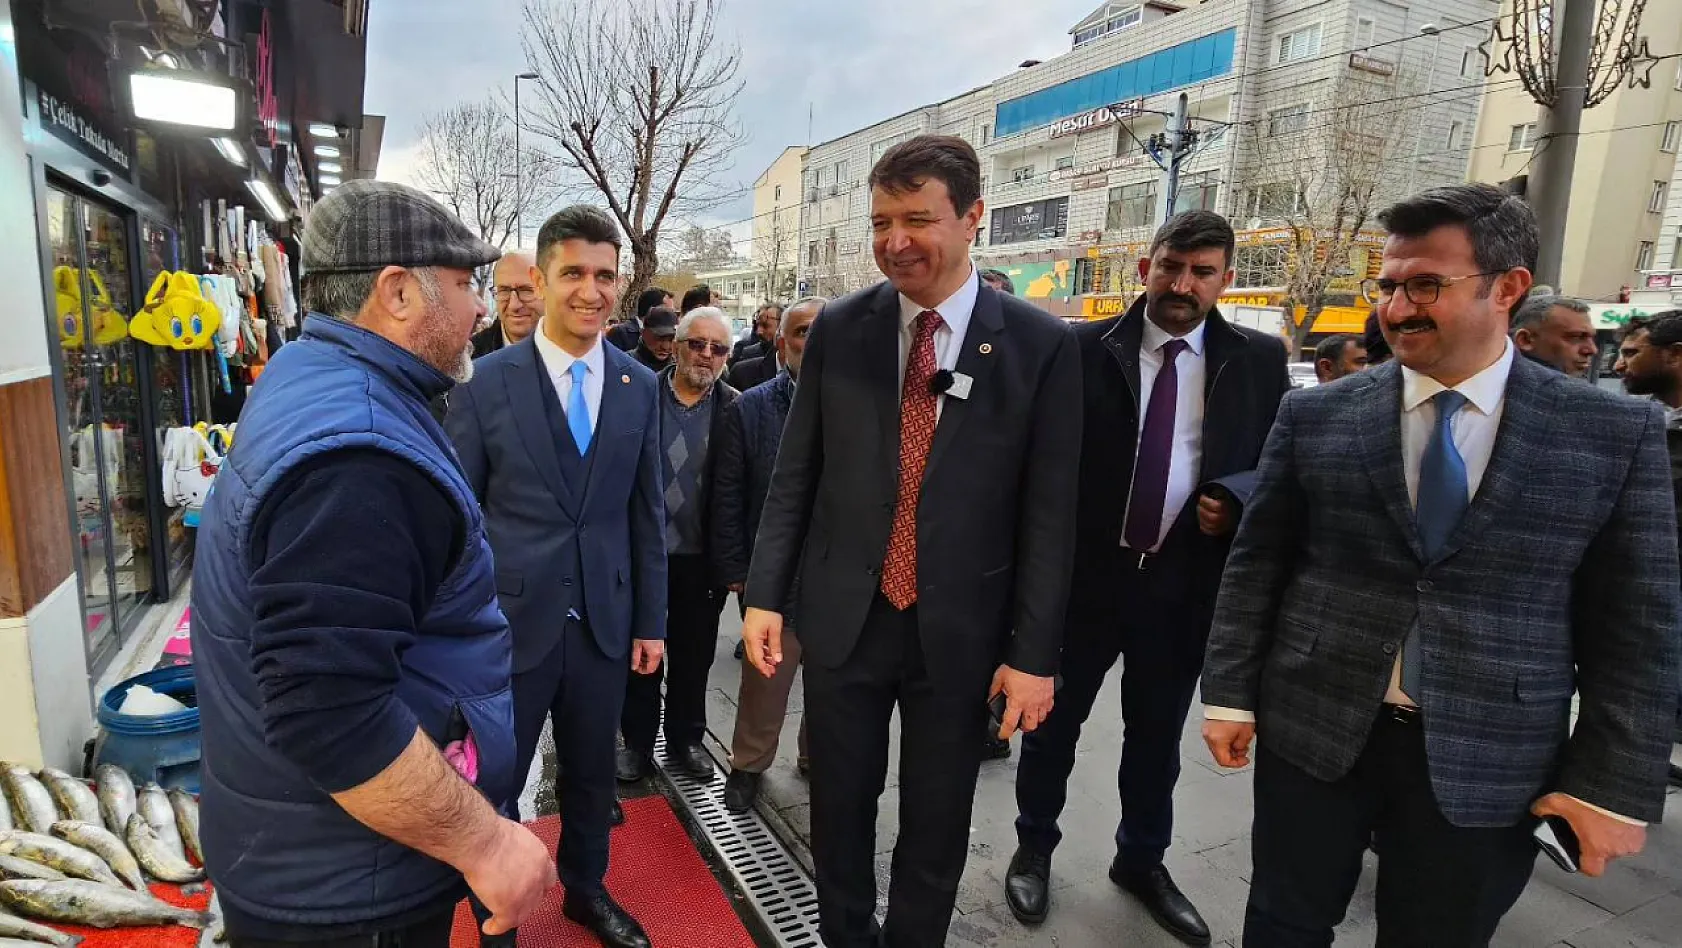 'Cumhurbaşkanı gelip Büyükşehir'de, Kocasinan'da oy toplamaya çalışıyor'